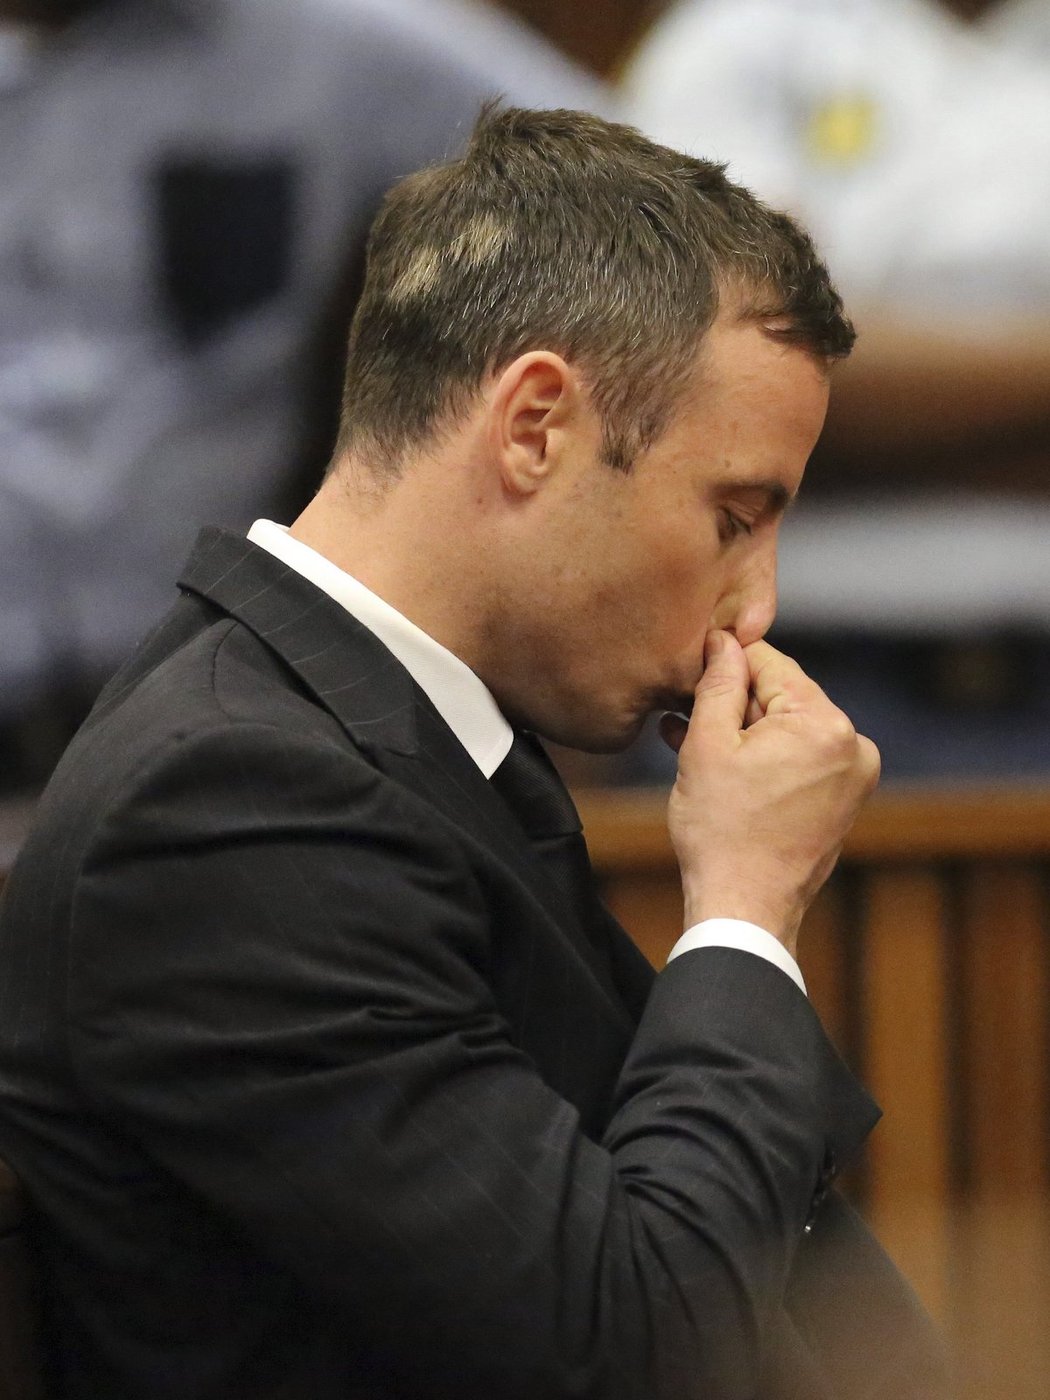 Oscar Pistorius a jeho reakce na rozsudek, kterým ho soudkyně poslala na pět let do vězení